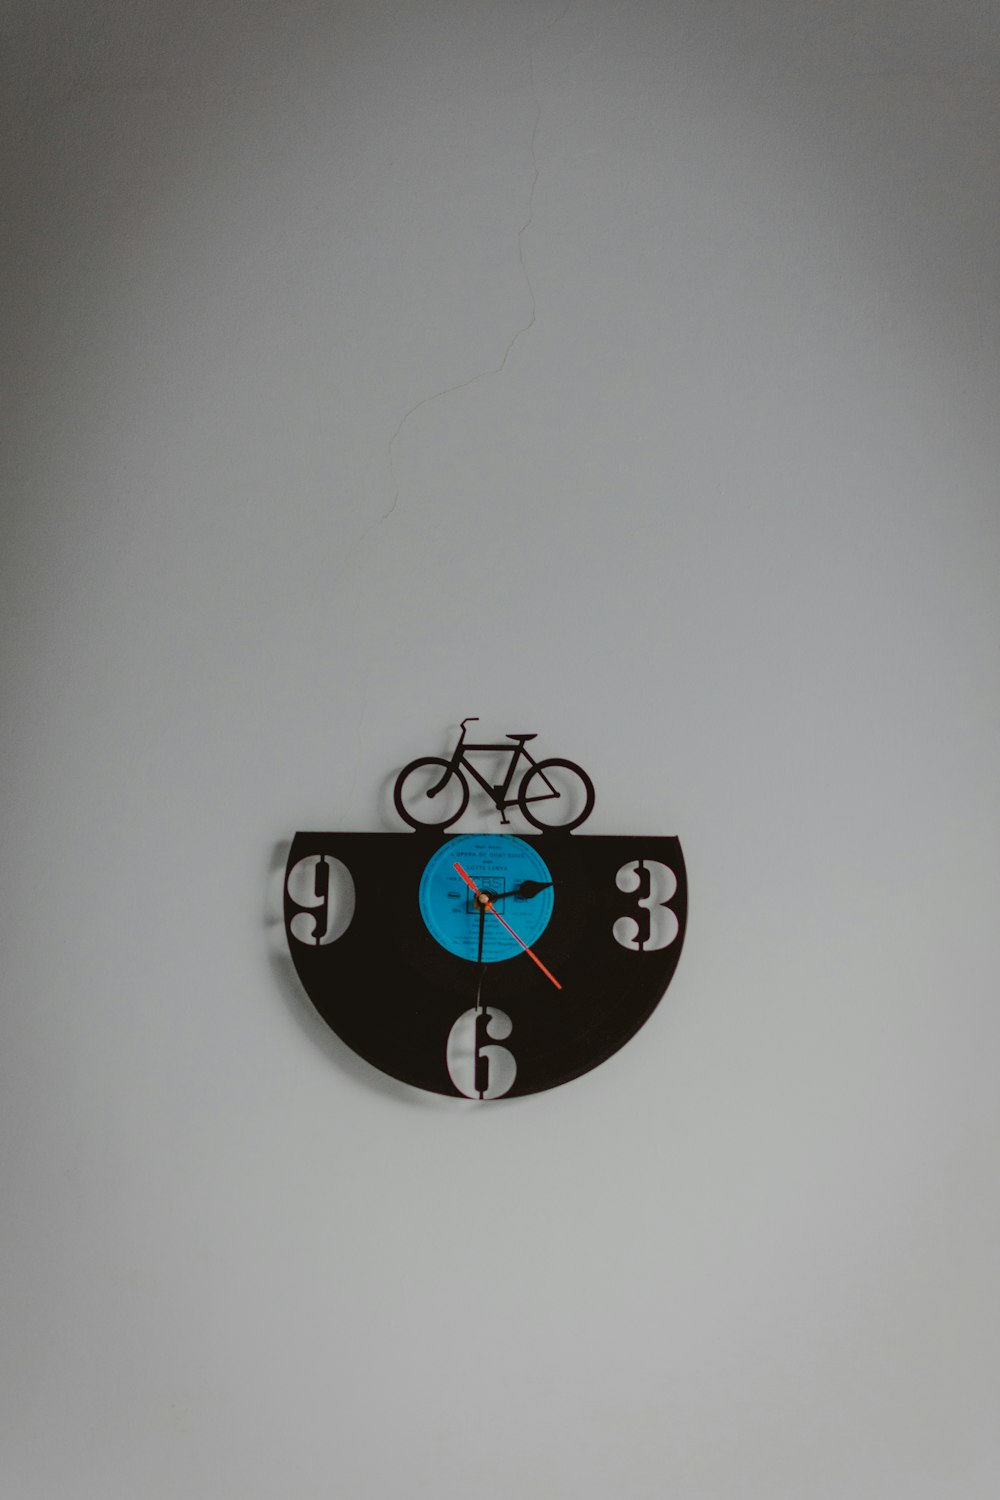 relógio de parede analógico preto e azul com tema de bicicleta exibindo o tempo de 3:30